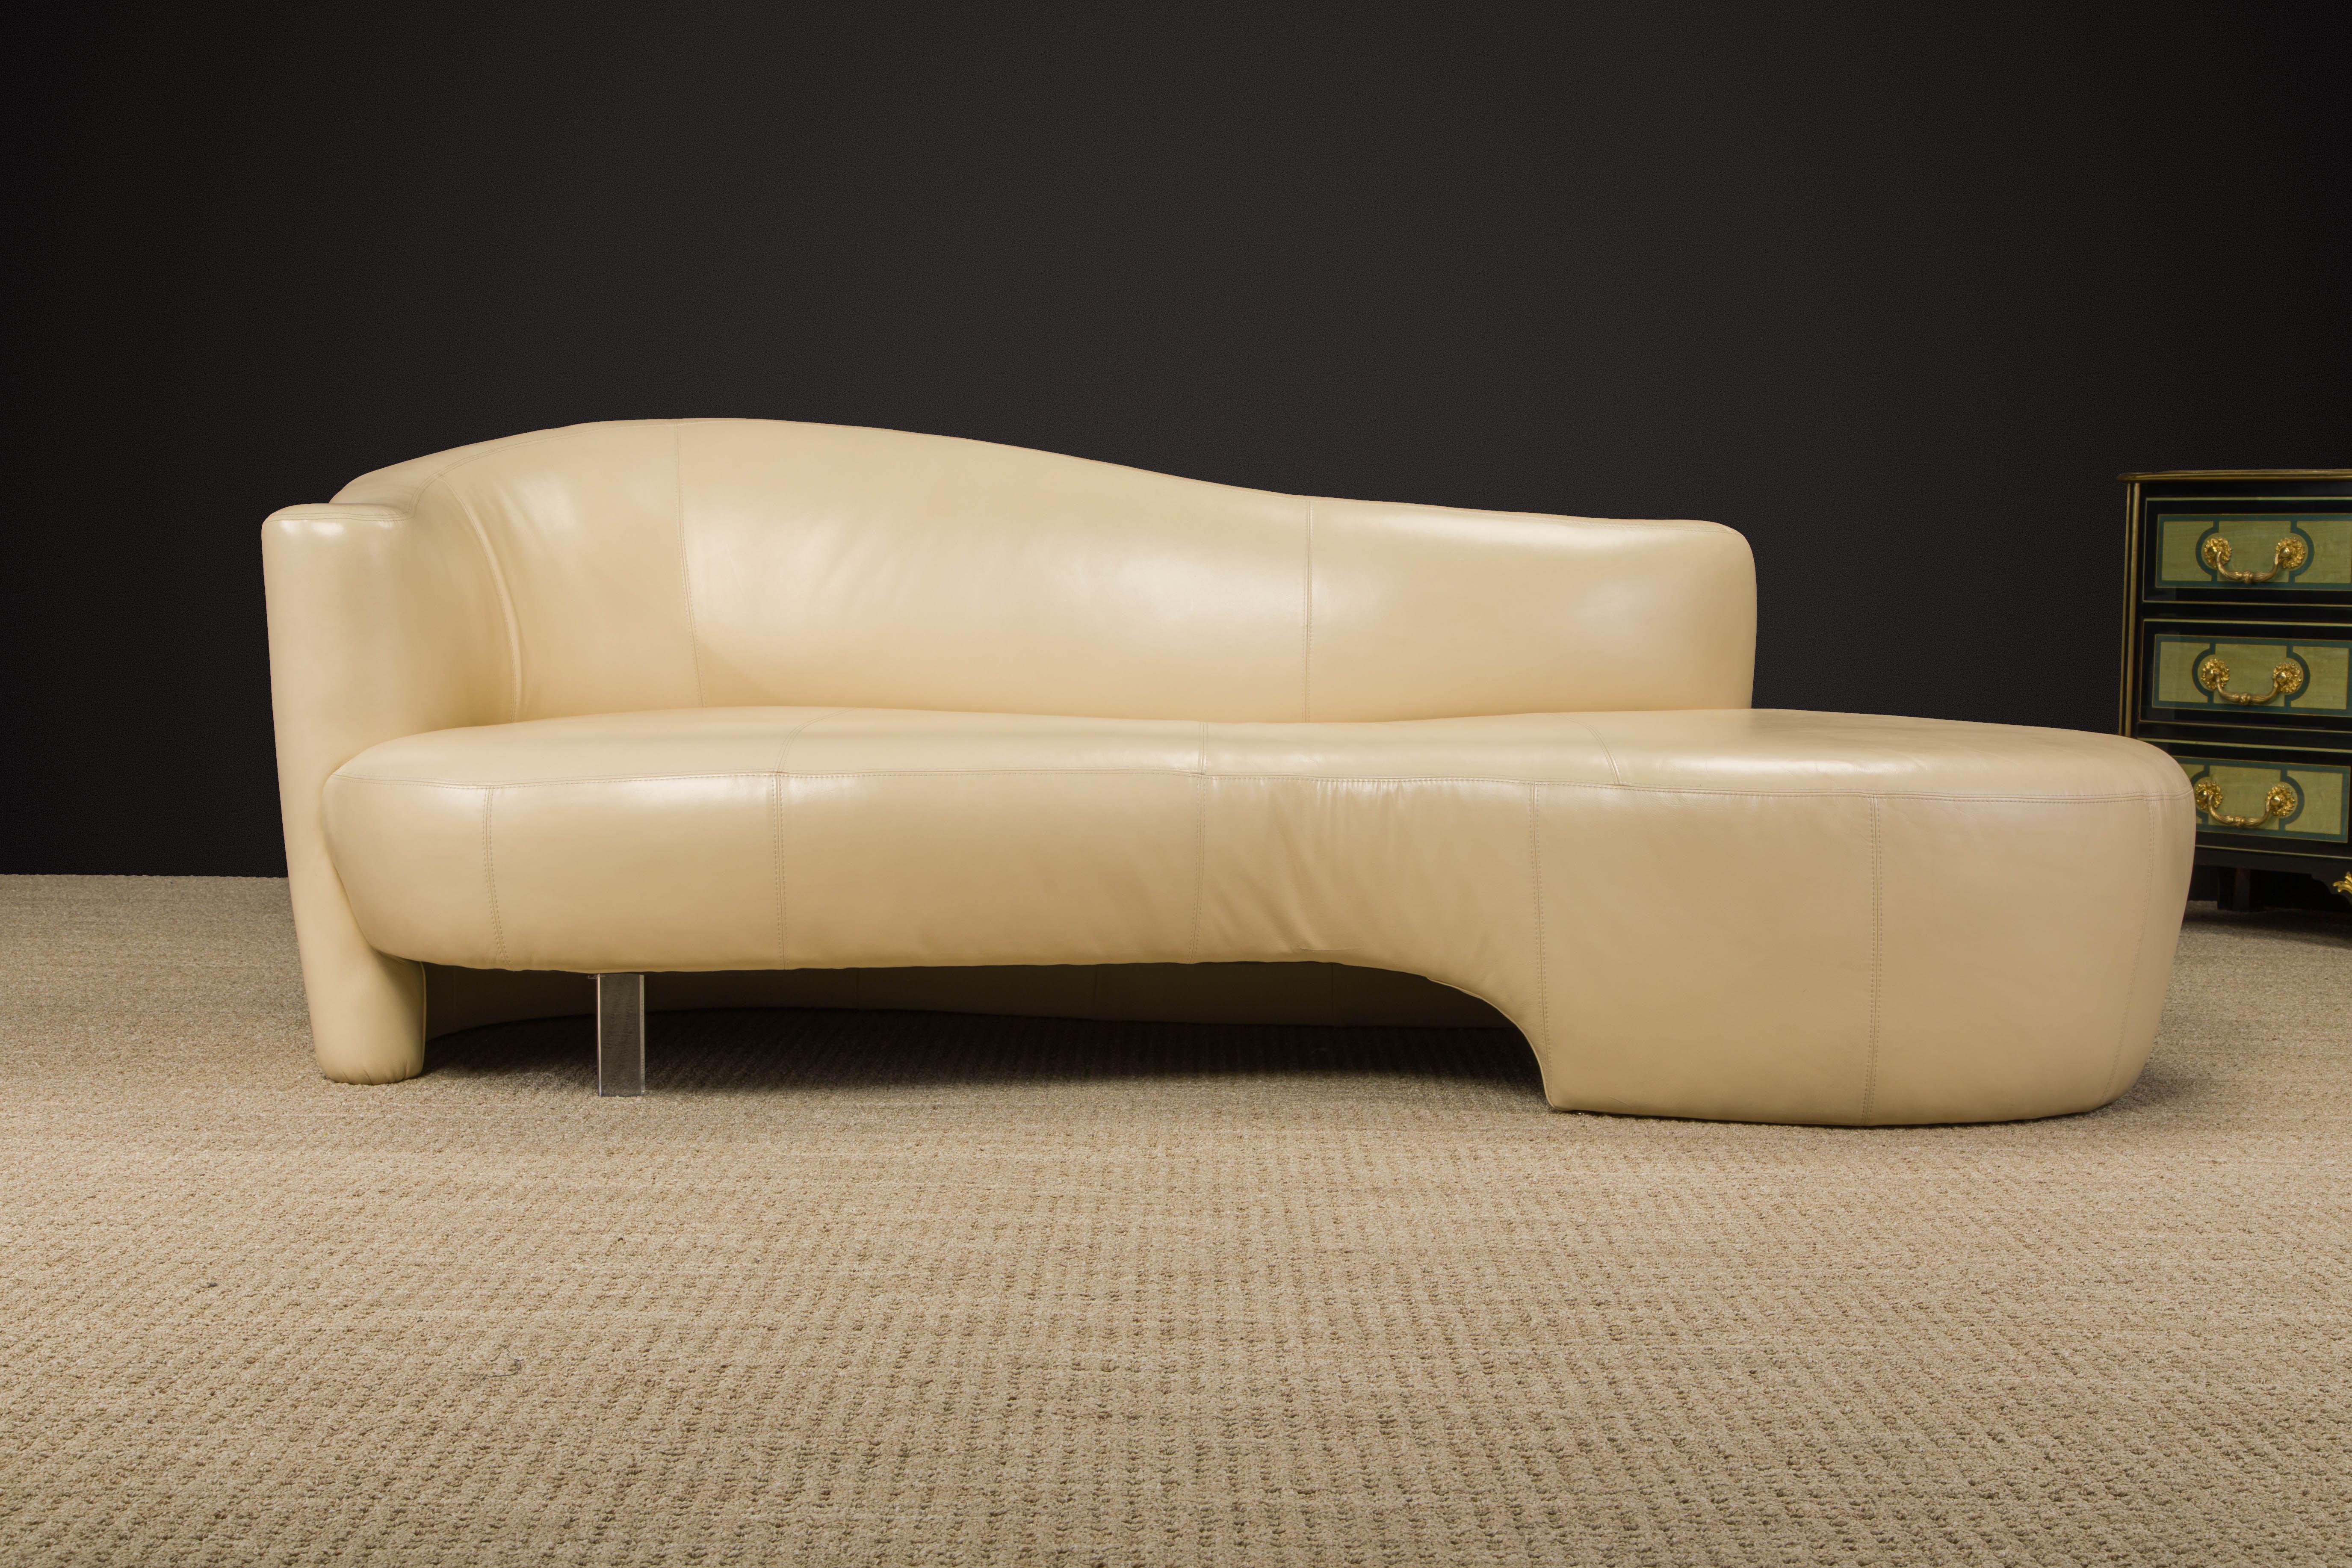 Dieses schöne, geschwungene und fließende Post-Modern-Sofa von Weiman ist aus weichem und luxuriösem hellbraunem Leder gefertigt, hat ein einzelnes Lucite-Bein und ist unten mit einem Weiman Label signiert.  

Dieses von Robert L. Ebel entworfene